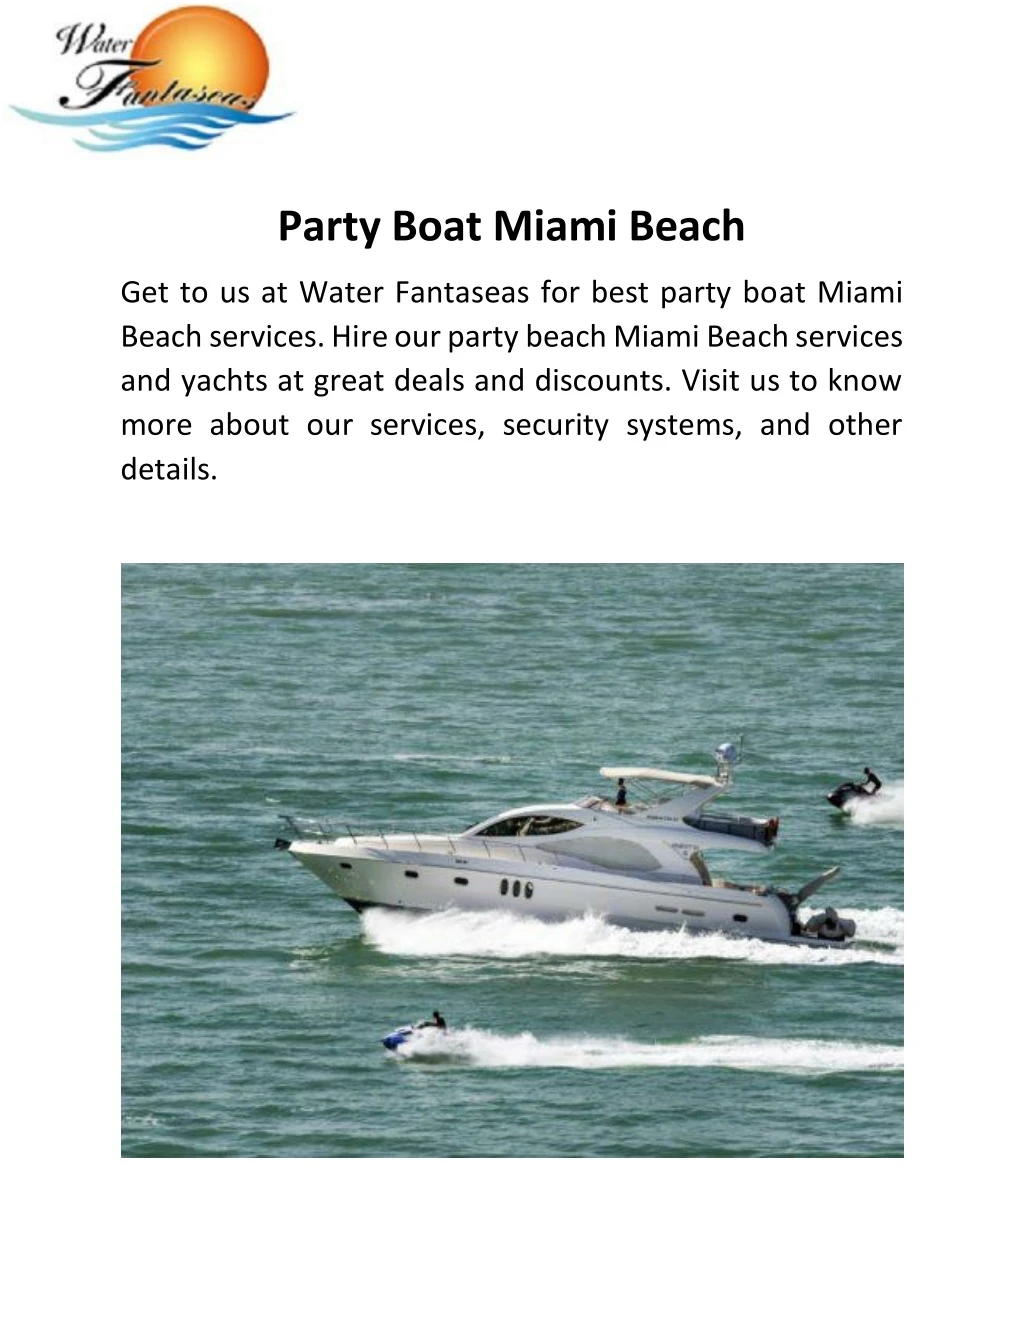 party boat miami beach